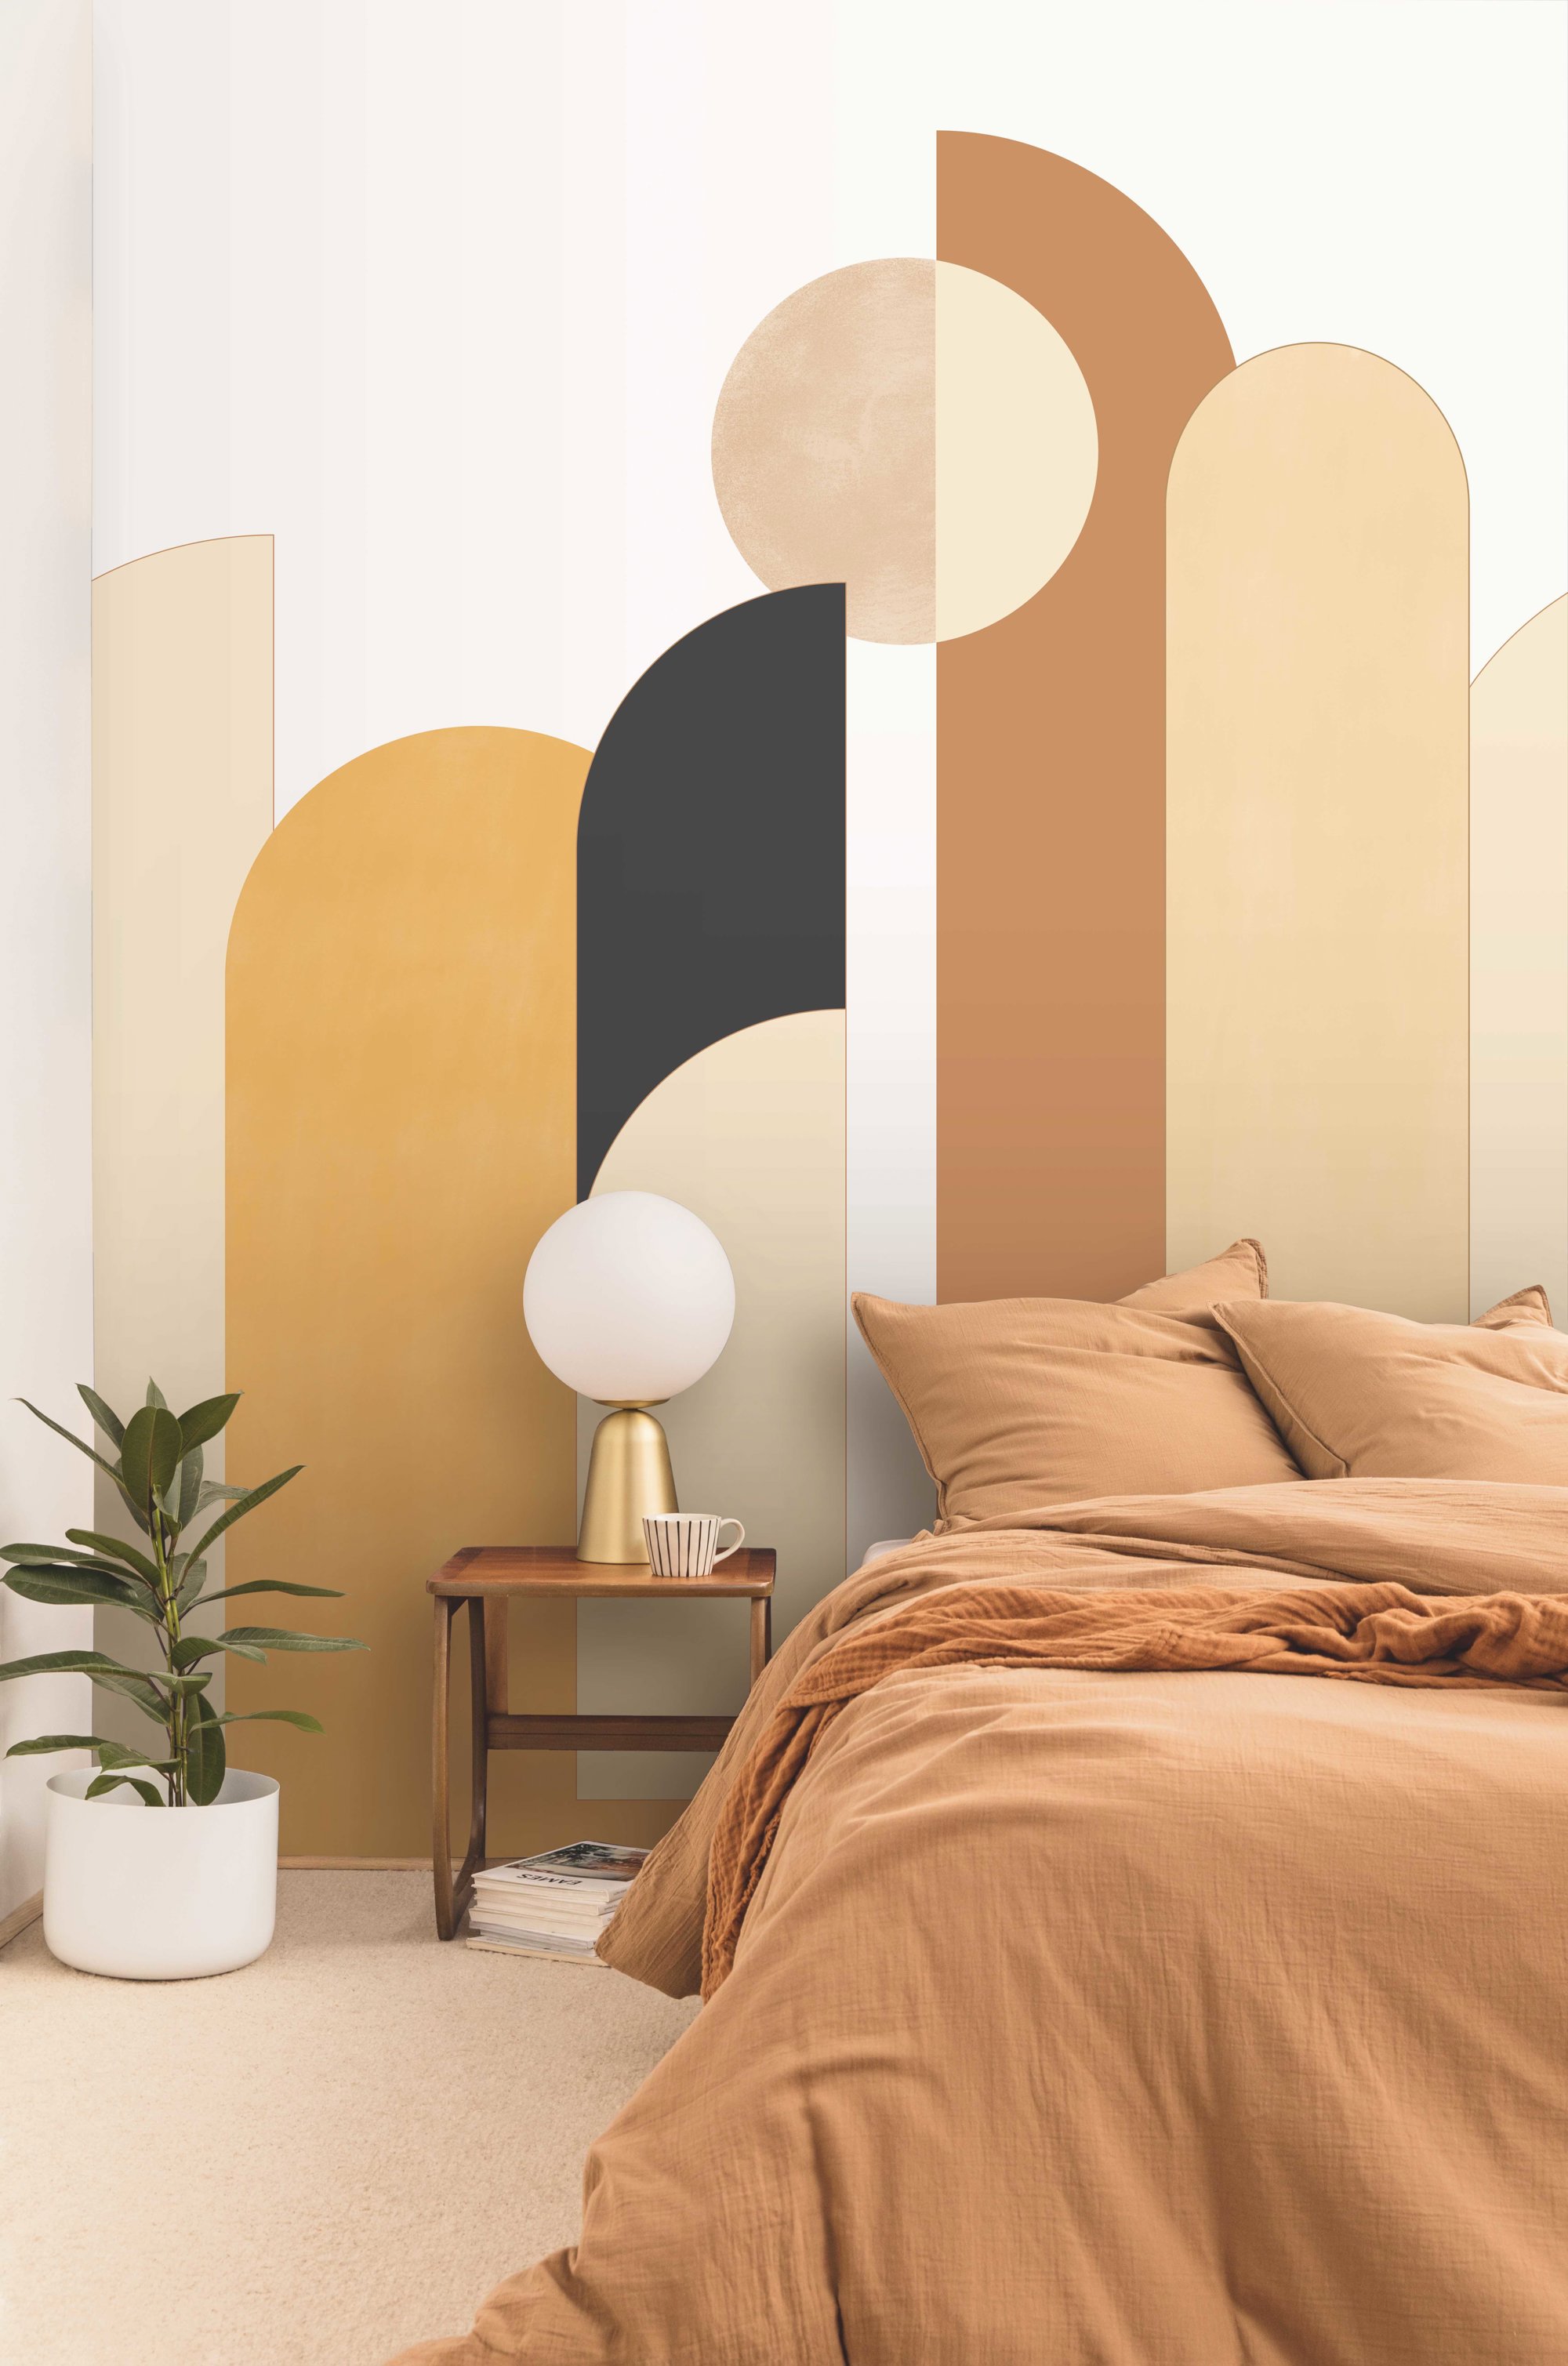 Dormitorios con papel pintado en todos los estilos: 15 propuestas florales,  geométricas, abstractas y ¡tropicales!